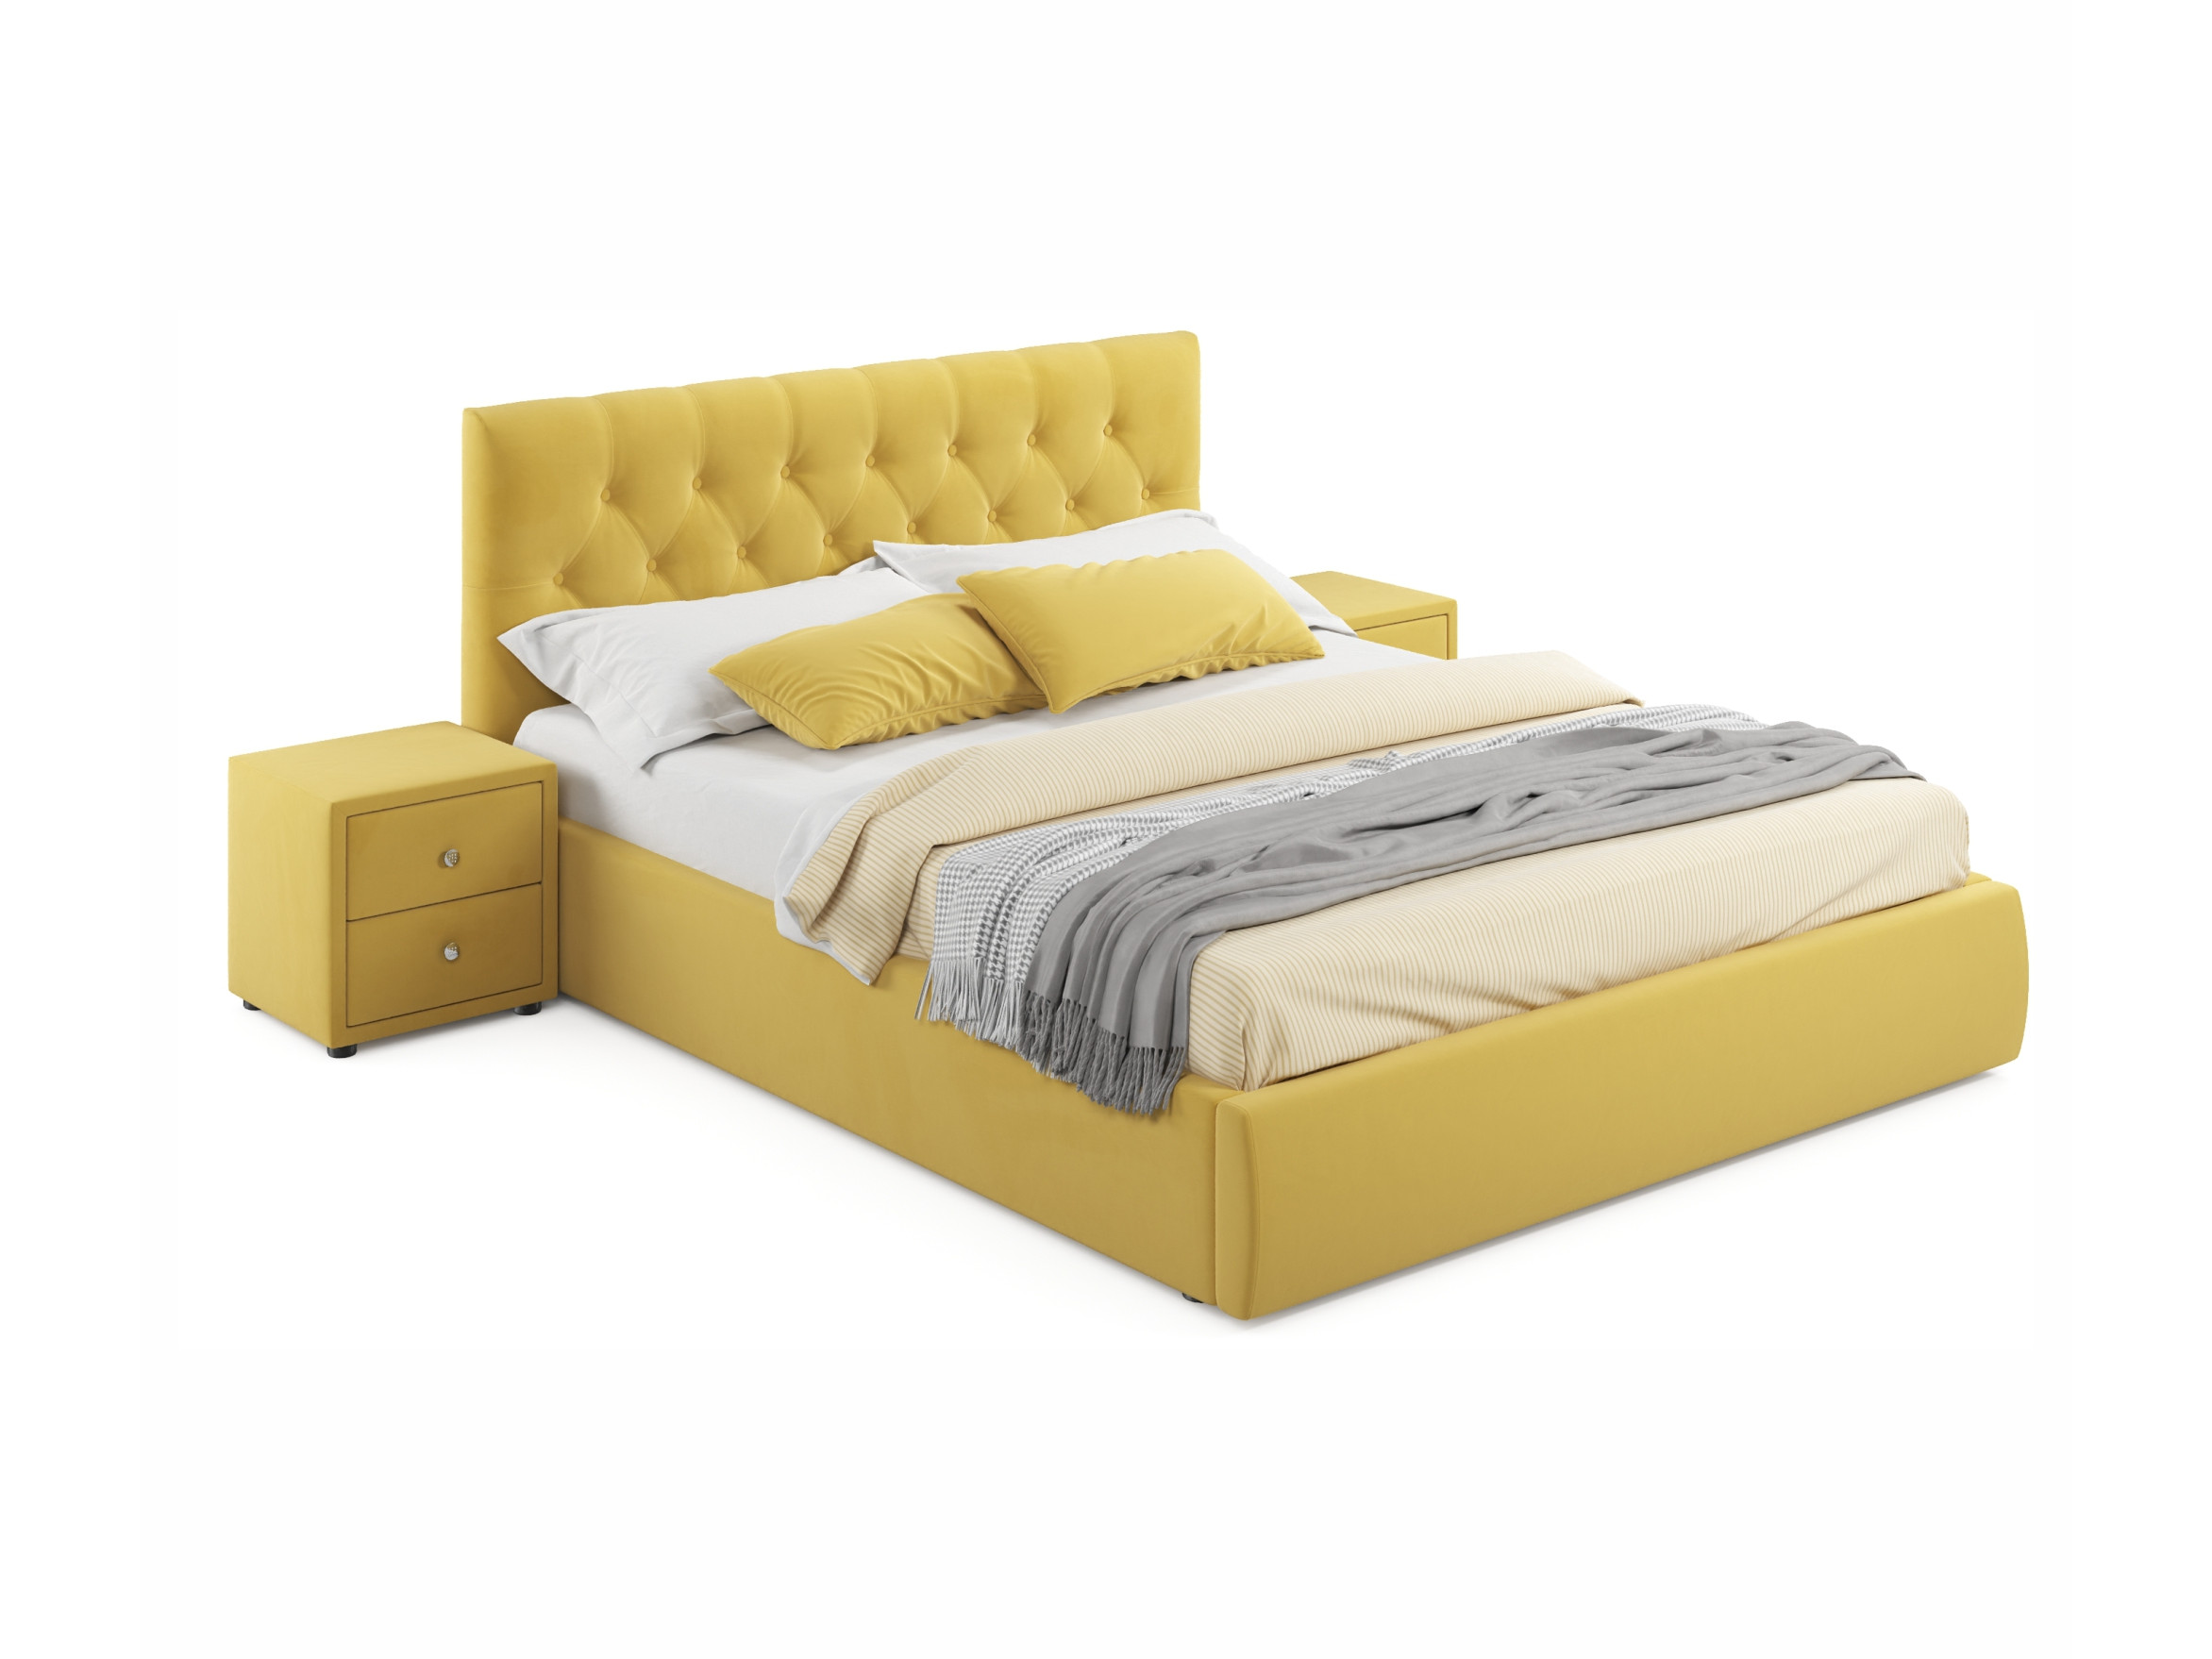 Мягкая кровать с тумбами Verona 1600 желтая с подъемным механизмом желтый, Желтый, Велюр, ДСП мягкая кровать verona 1600 желтая с подъемным механизмом желтый желтый велюр дсп